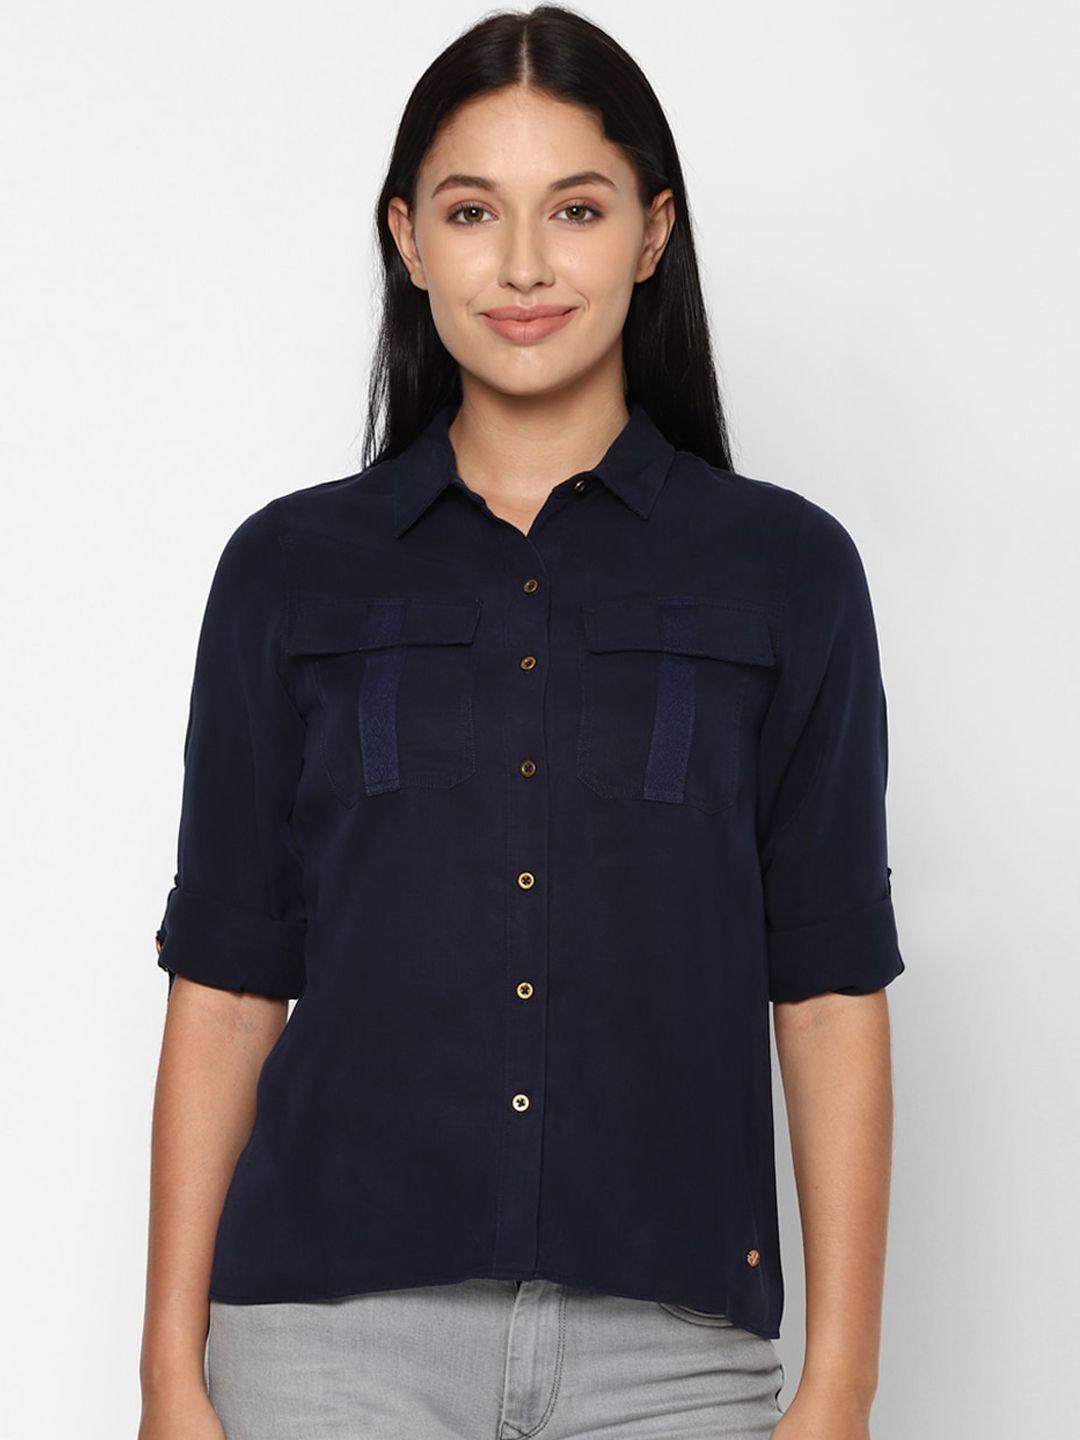 allen-solly-woman-women-navy-blue-casual-shirt